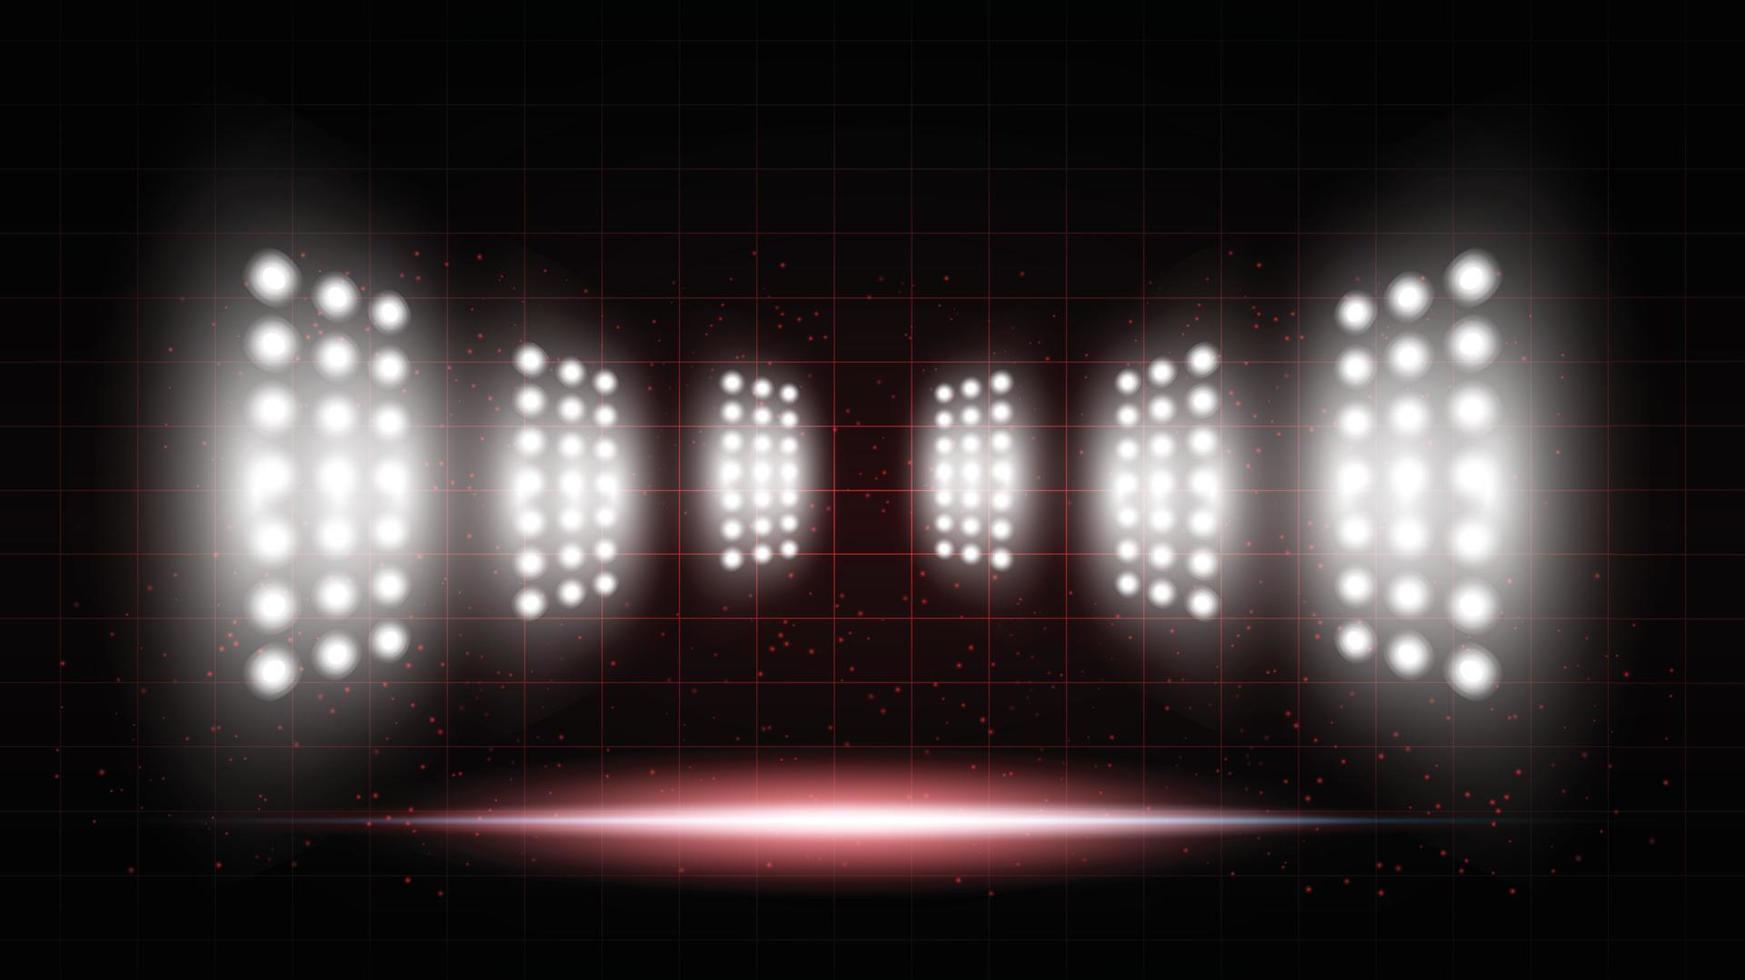 fondo rojo abstracto estadio sala de escenario con luces escénicas de interfaz de usuario de tecnología futurista redonda iluminación vectorial azul fondo de foco de escenario vacío. vector